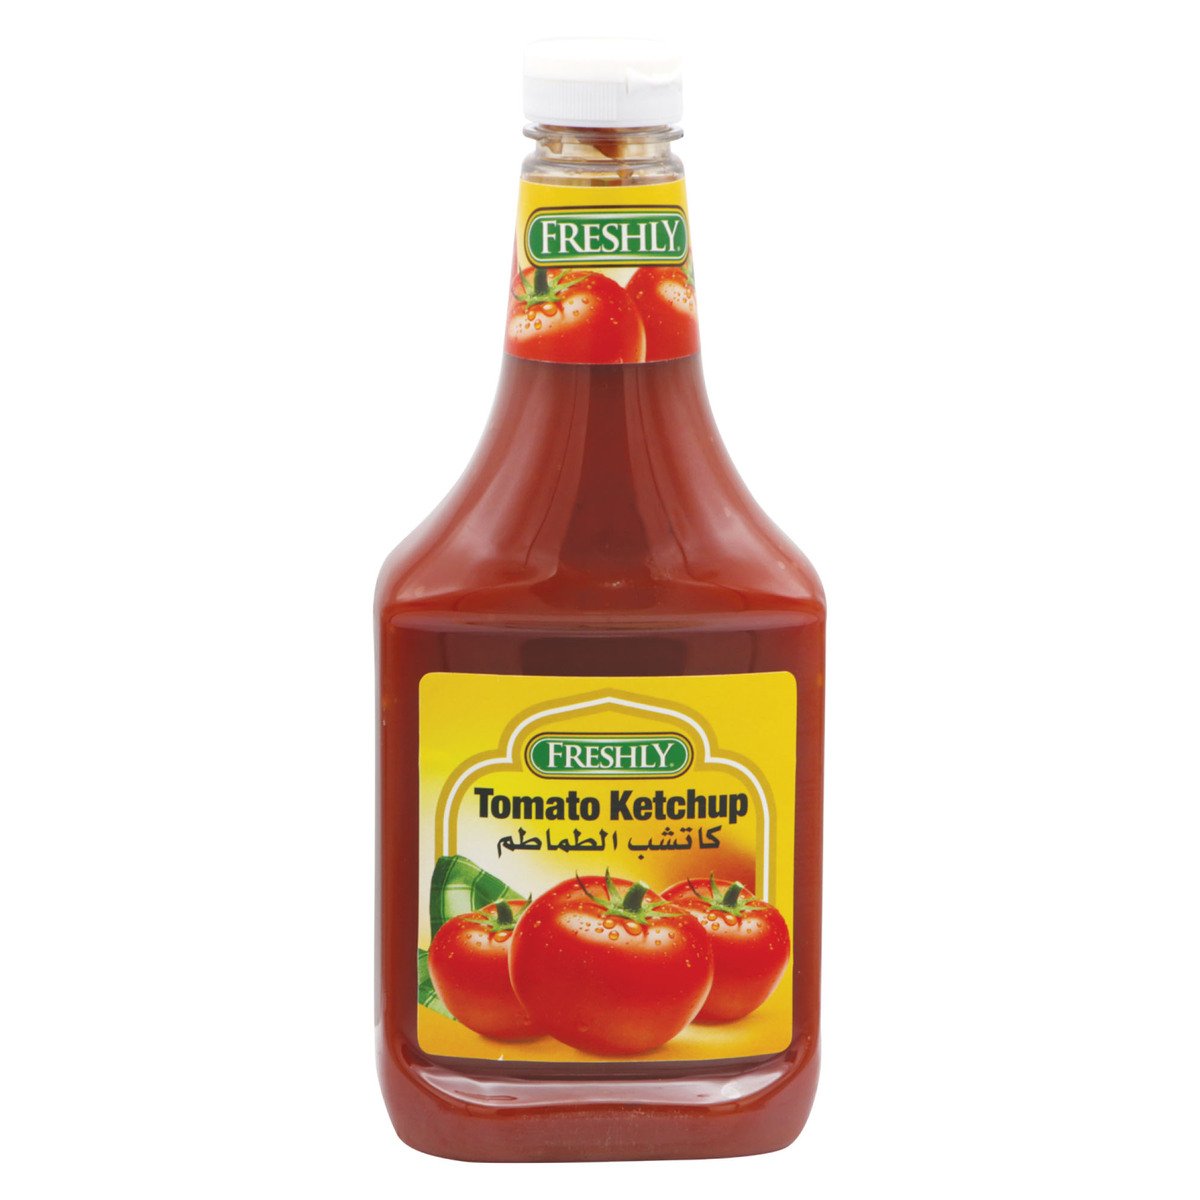 Freshly Tomato Ketchup 36oz